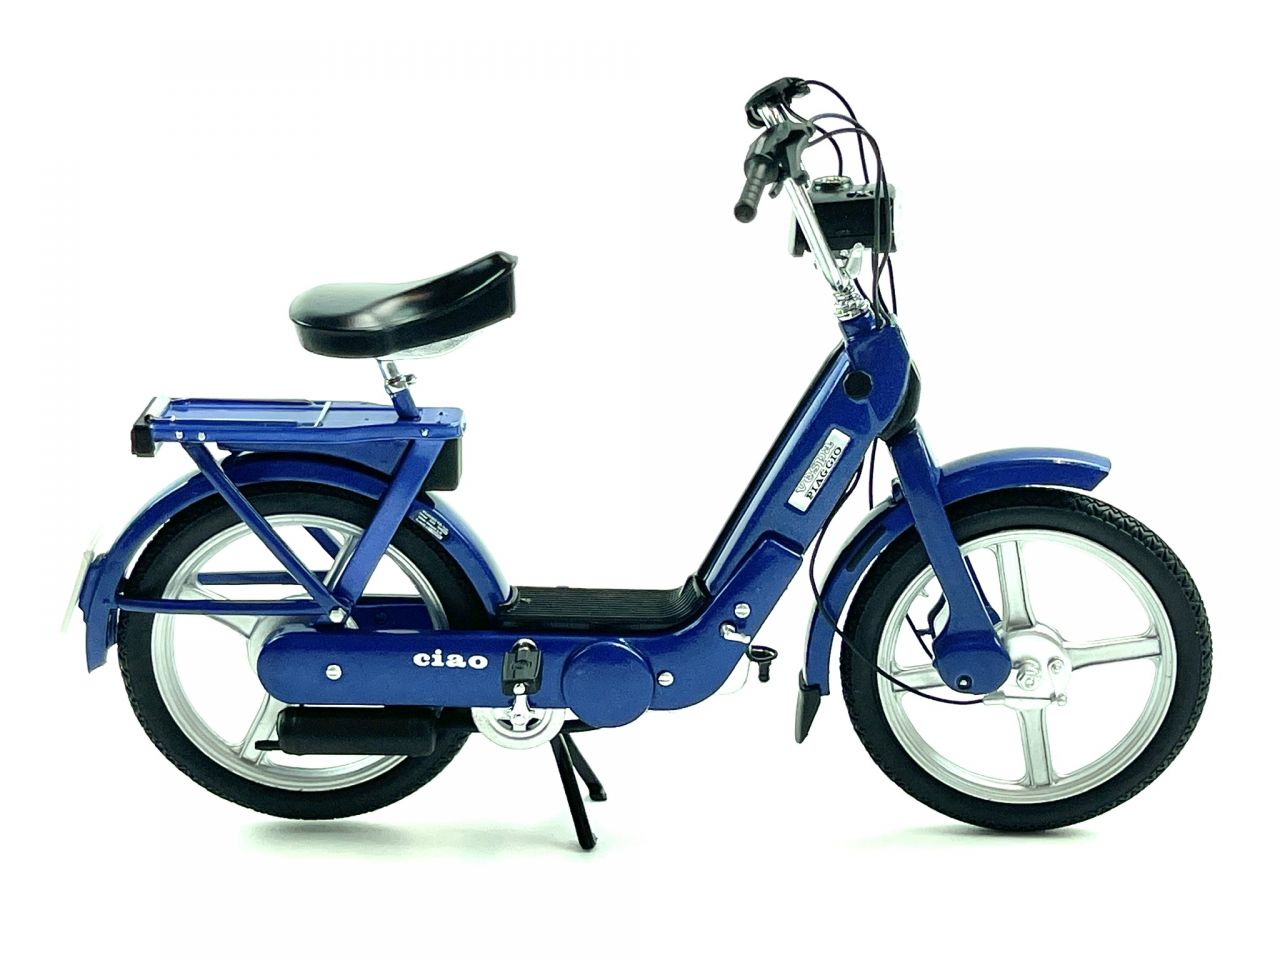 Mofa Modell Maßstab 1:10 Piaggio Ciao blau-metallic von 50cc Legends Moped von BOOL-tec